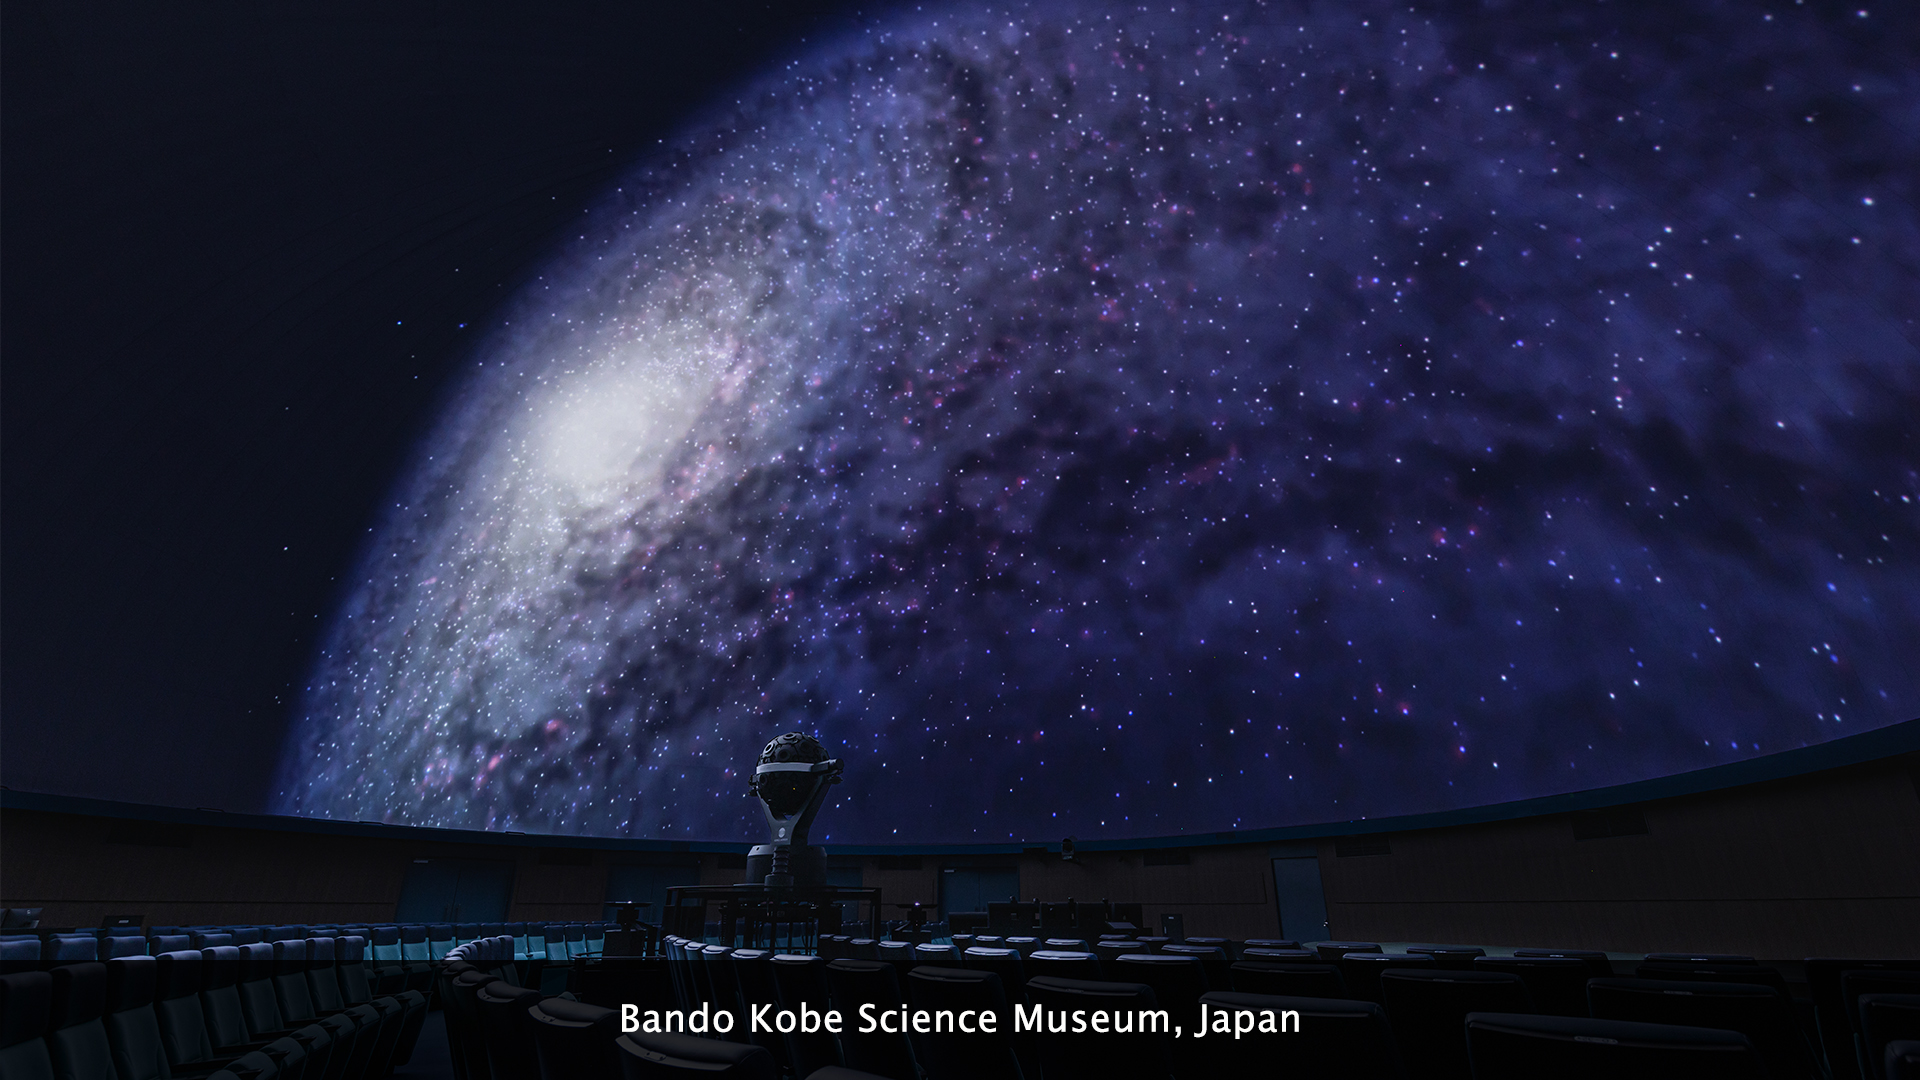 Bando Kobe Science Museum